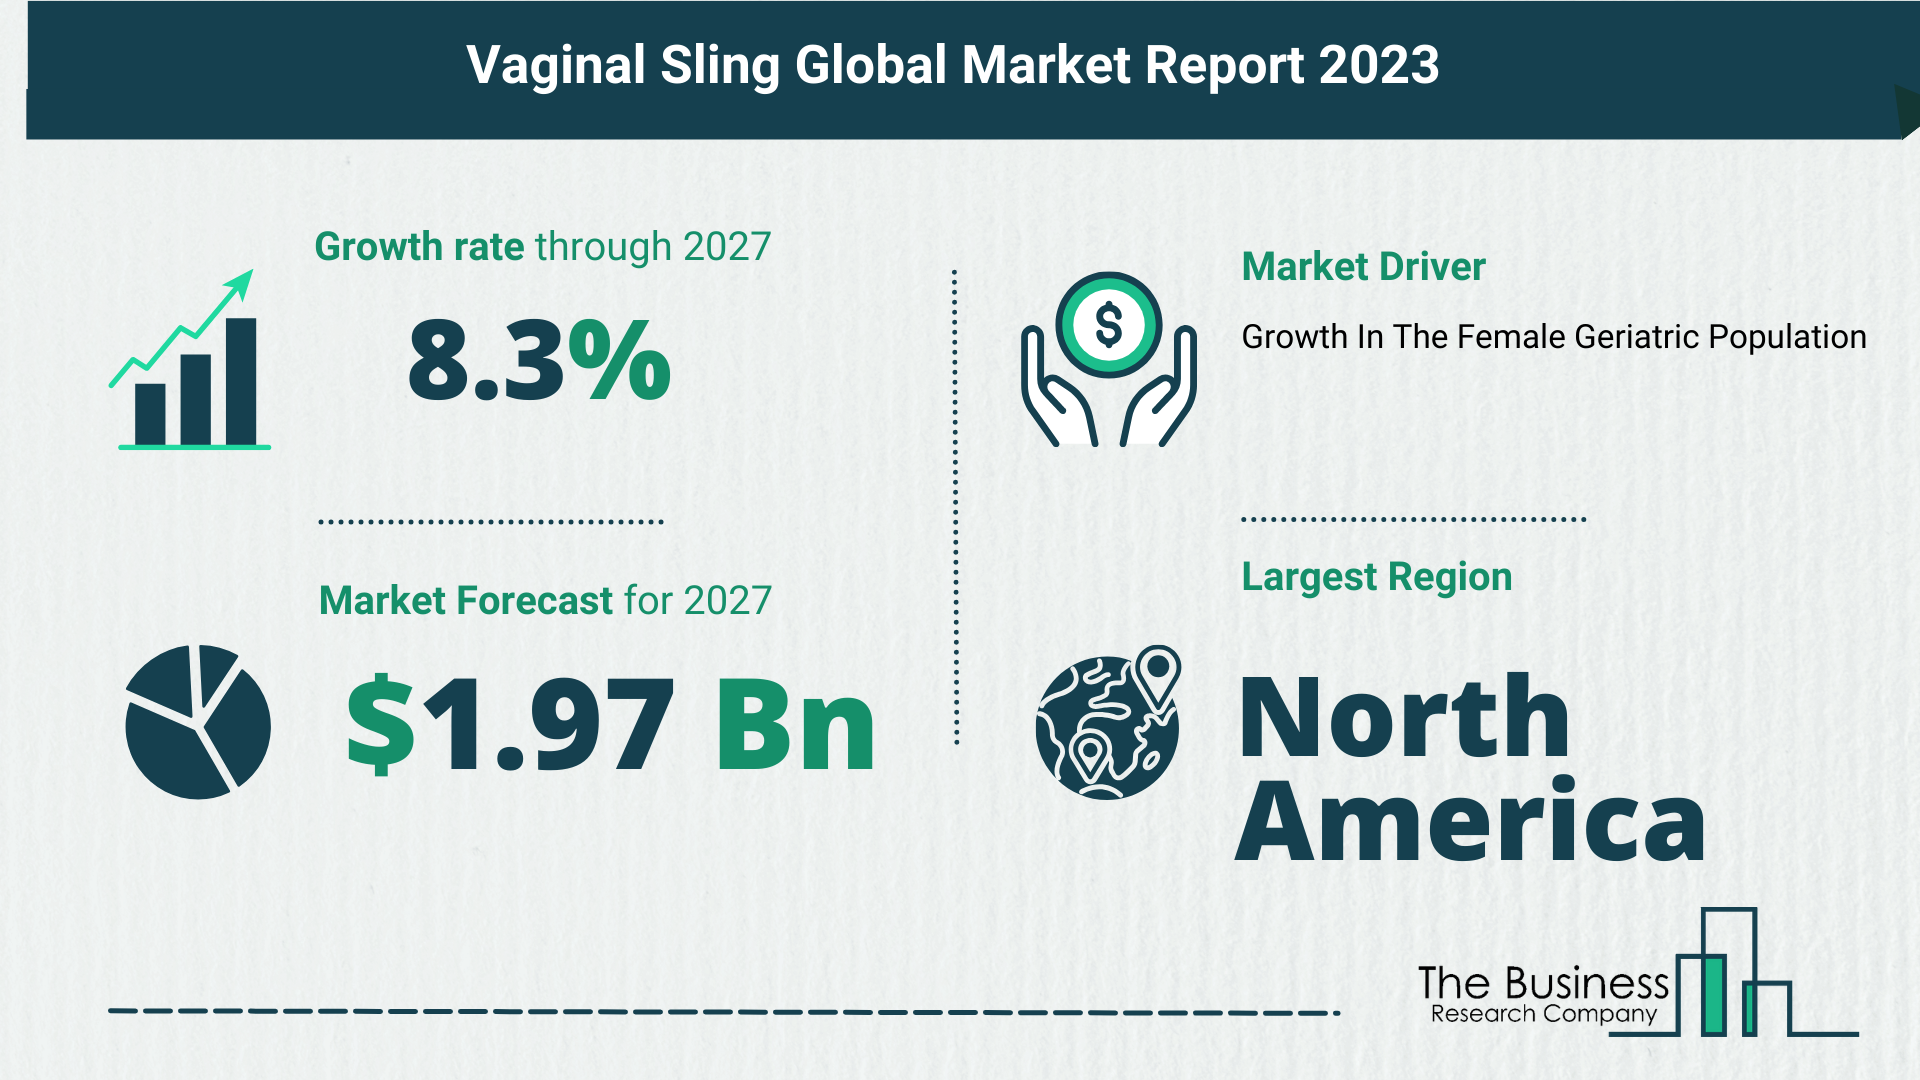 Global Vaginal Sling Market